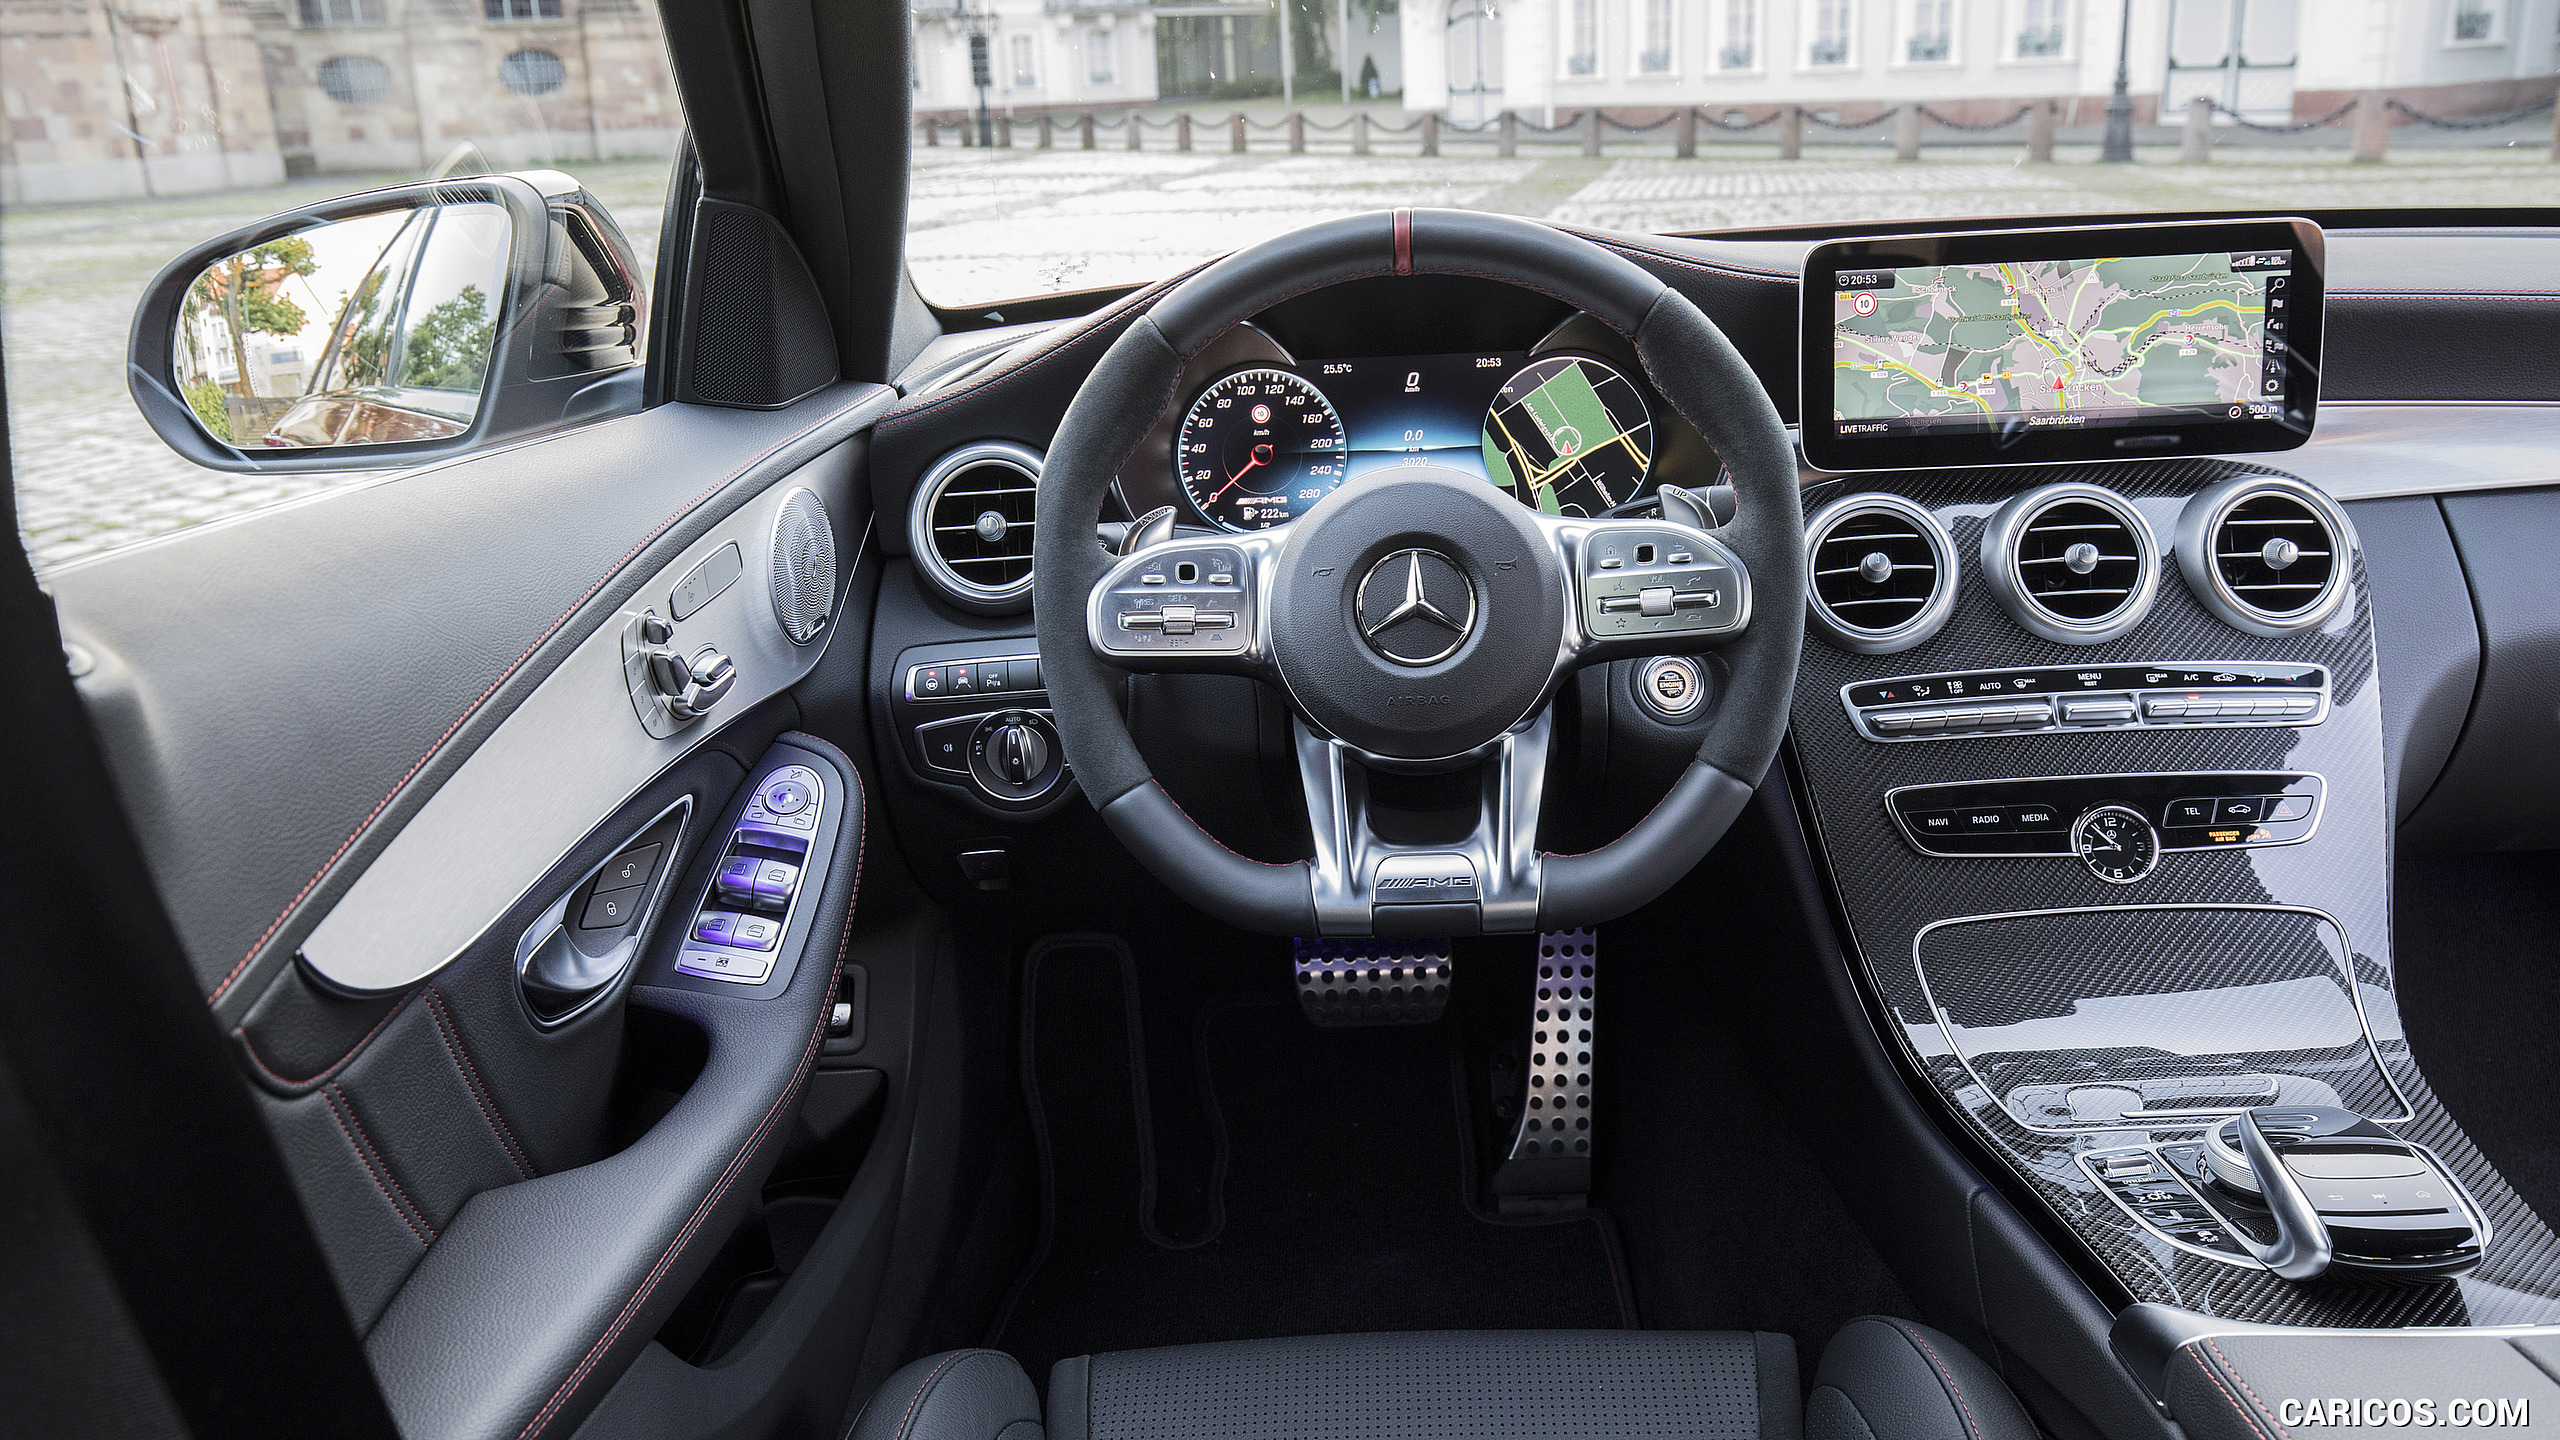 2019 Mercedes-AMG C43 4MATIC Sedan - Interior, Cockpit, #101 of 192